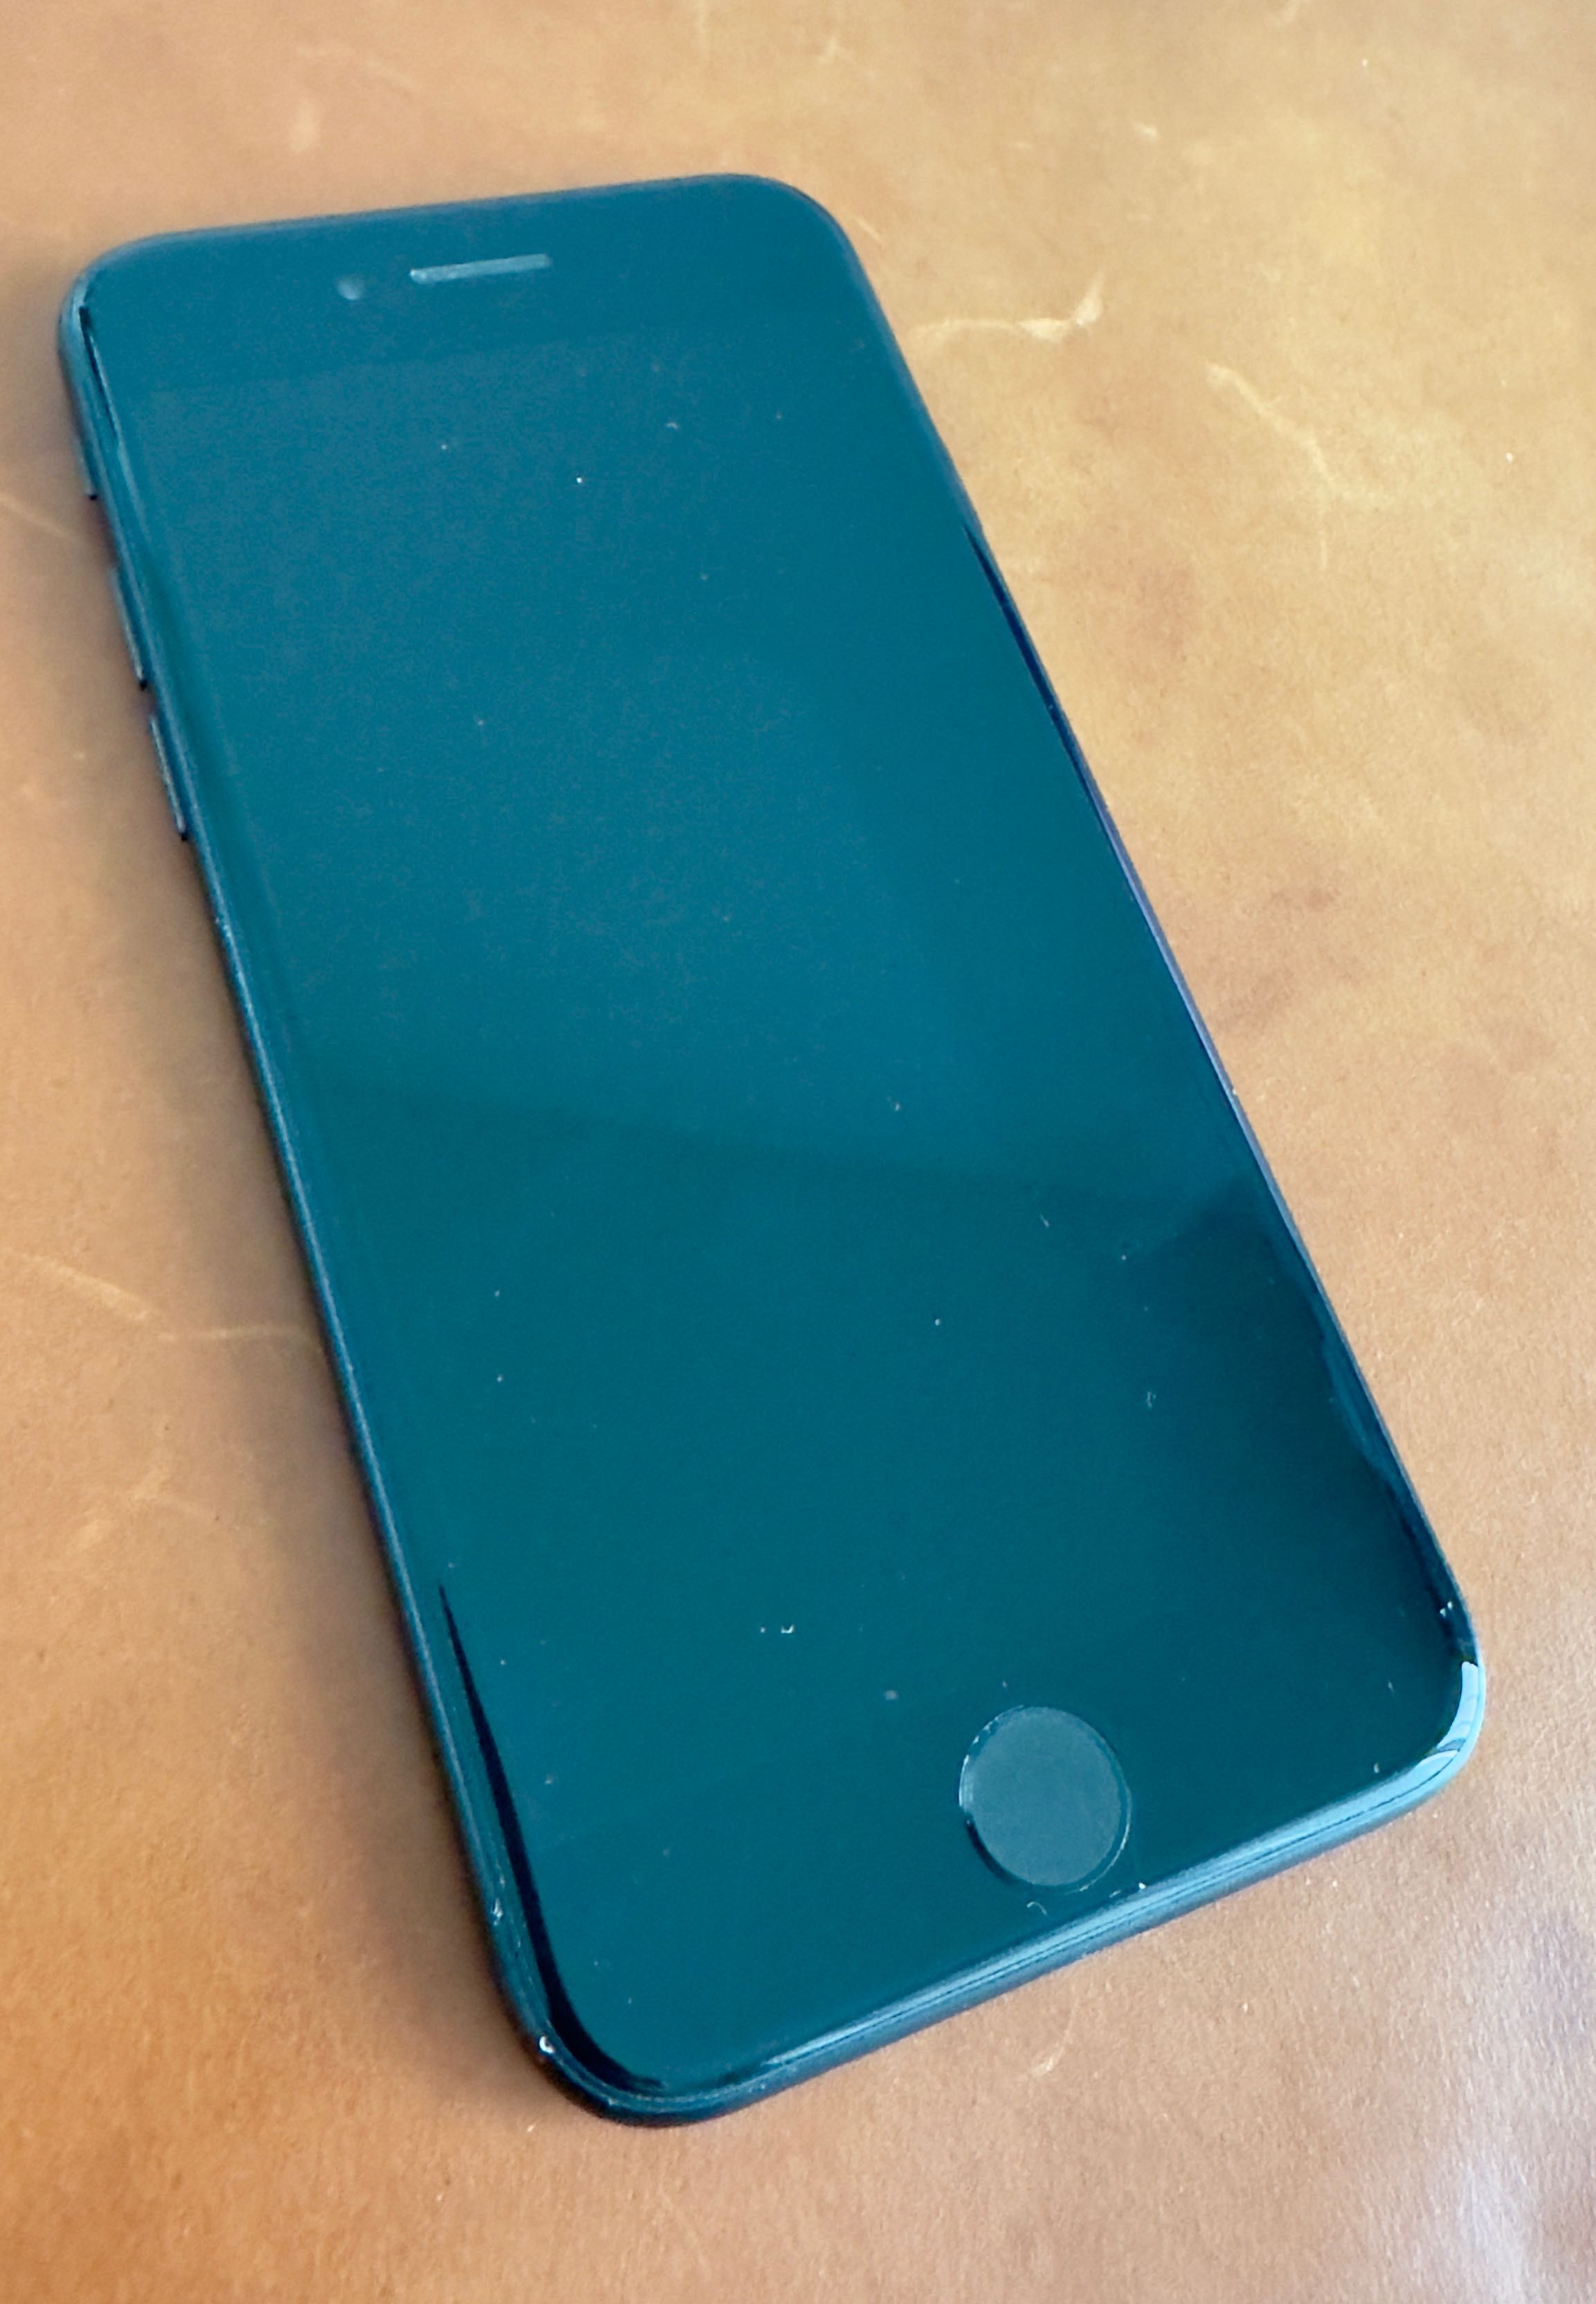 iPhone SE 2020 64gb, black